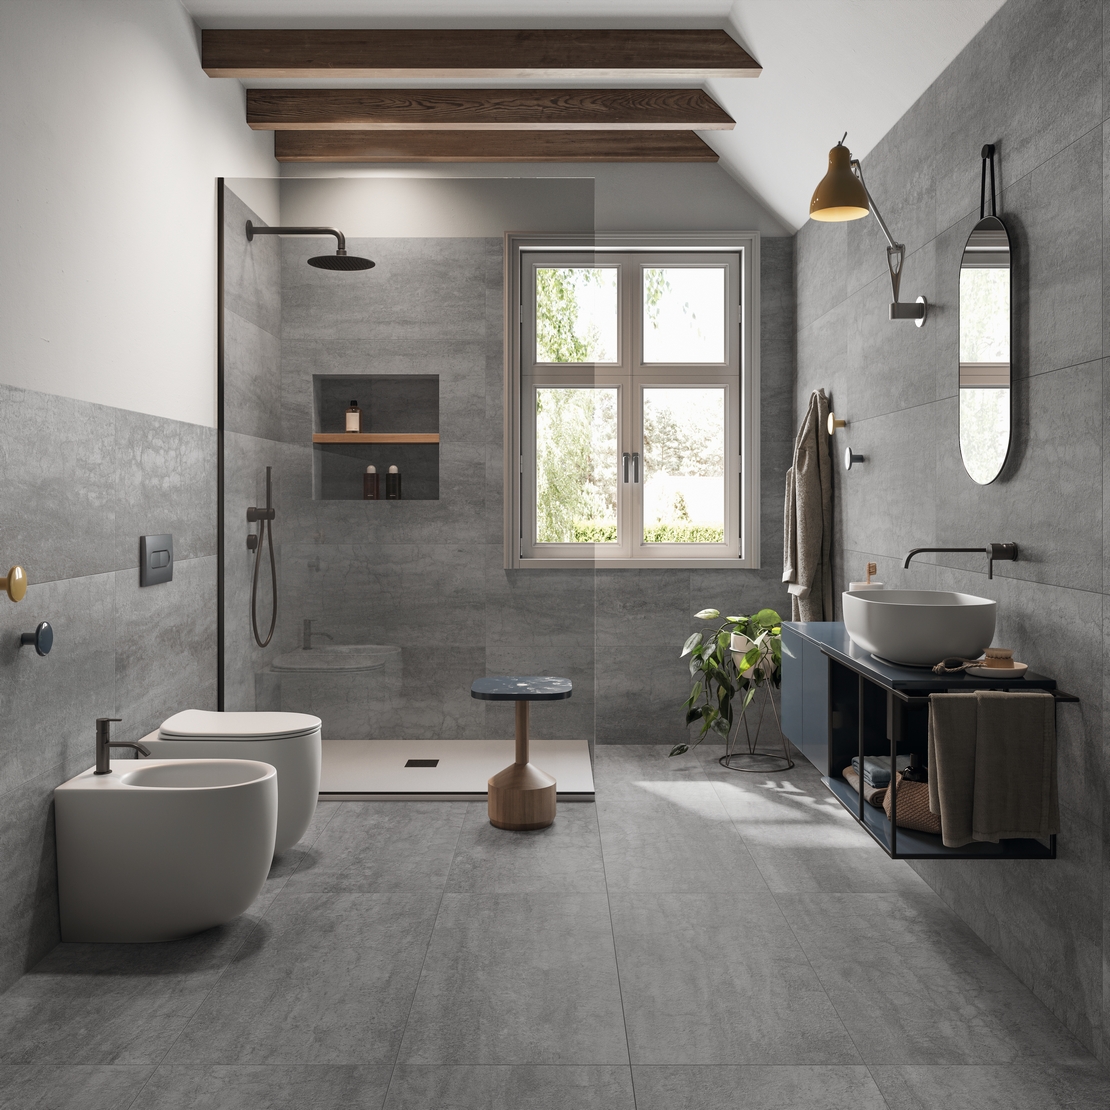 Bagno minimalista con doccia. Moderno effetto pietra grigio dalla stile industriale - Ambienti Iperceramica